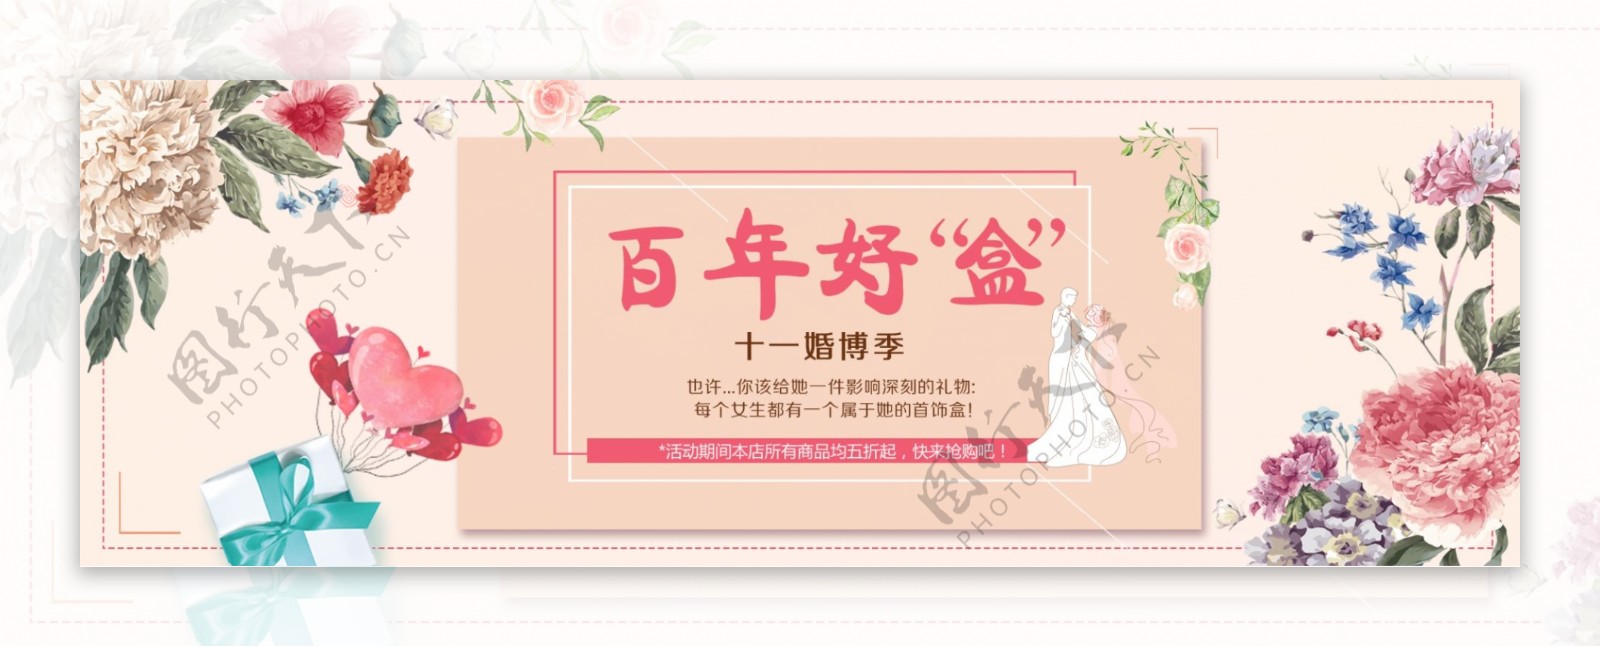 粉色背景手绘花朵边框婚博会礼品盒季促销电商淘宝海报banner